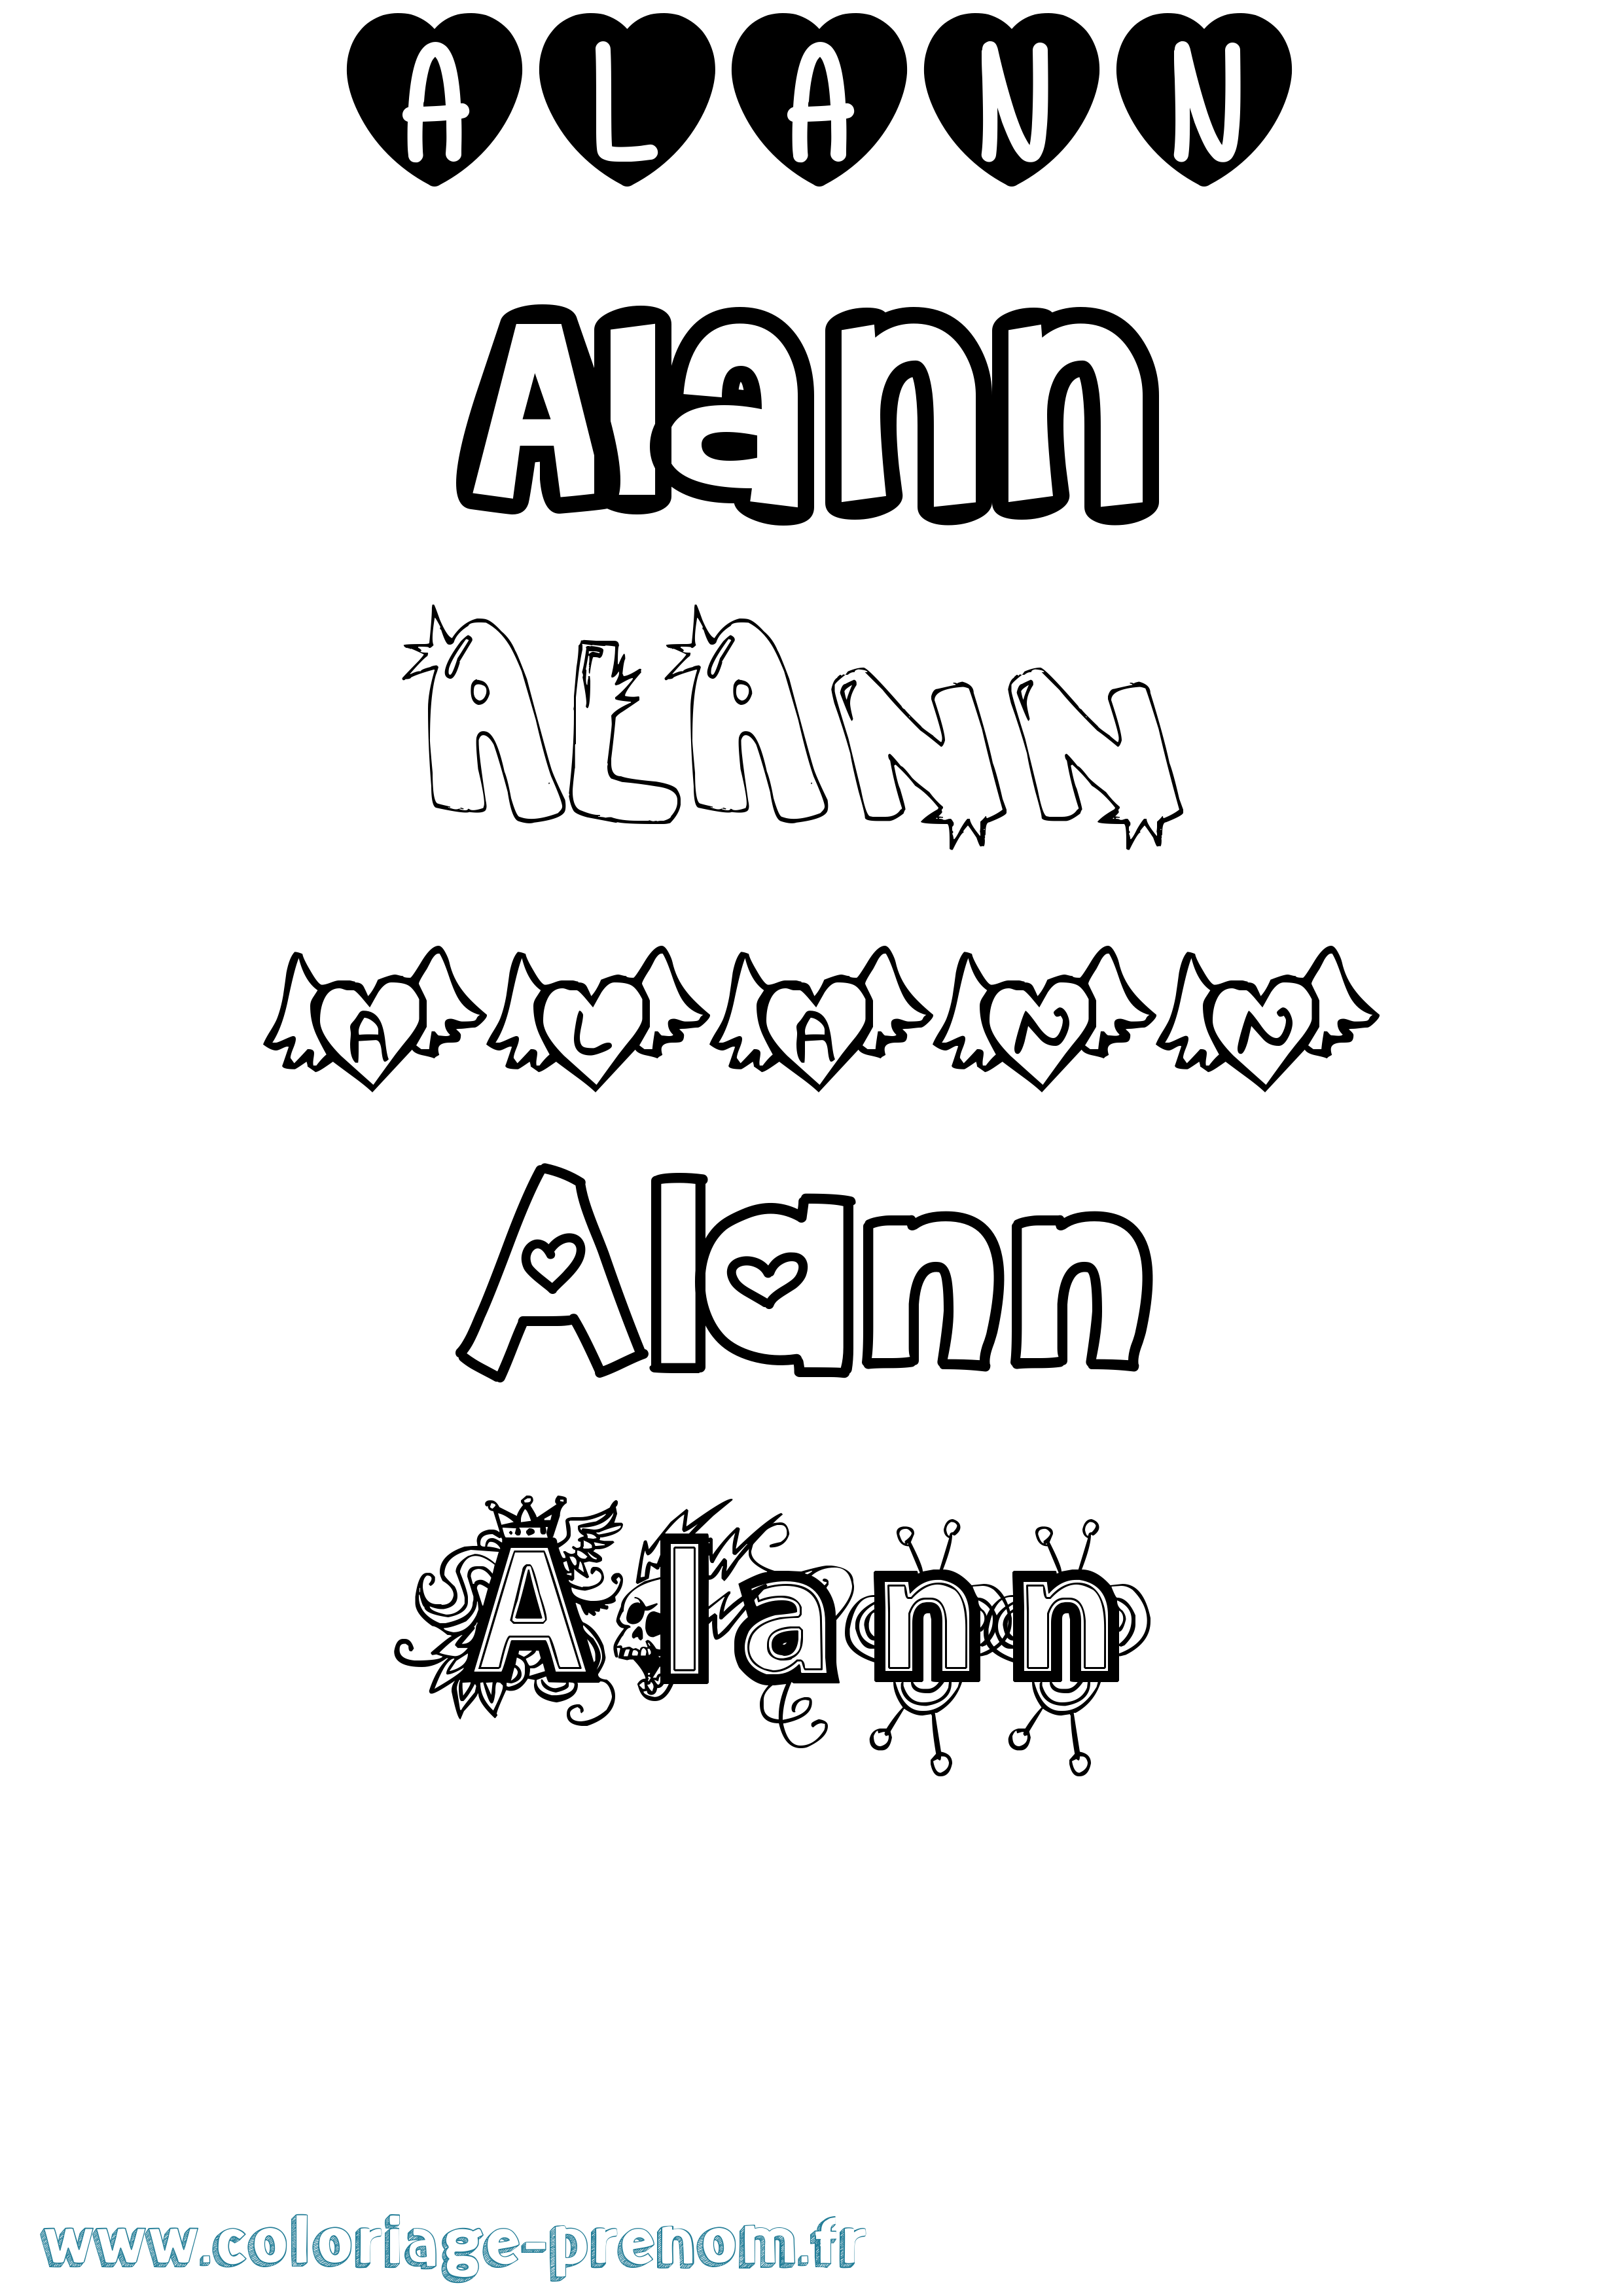 Coloriage prénom Alann Girly